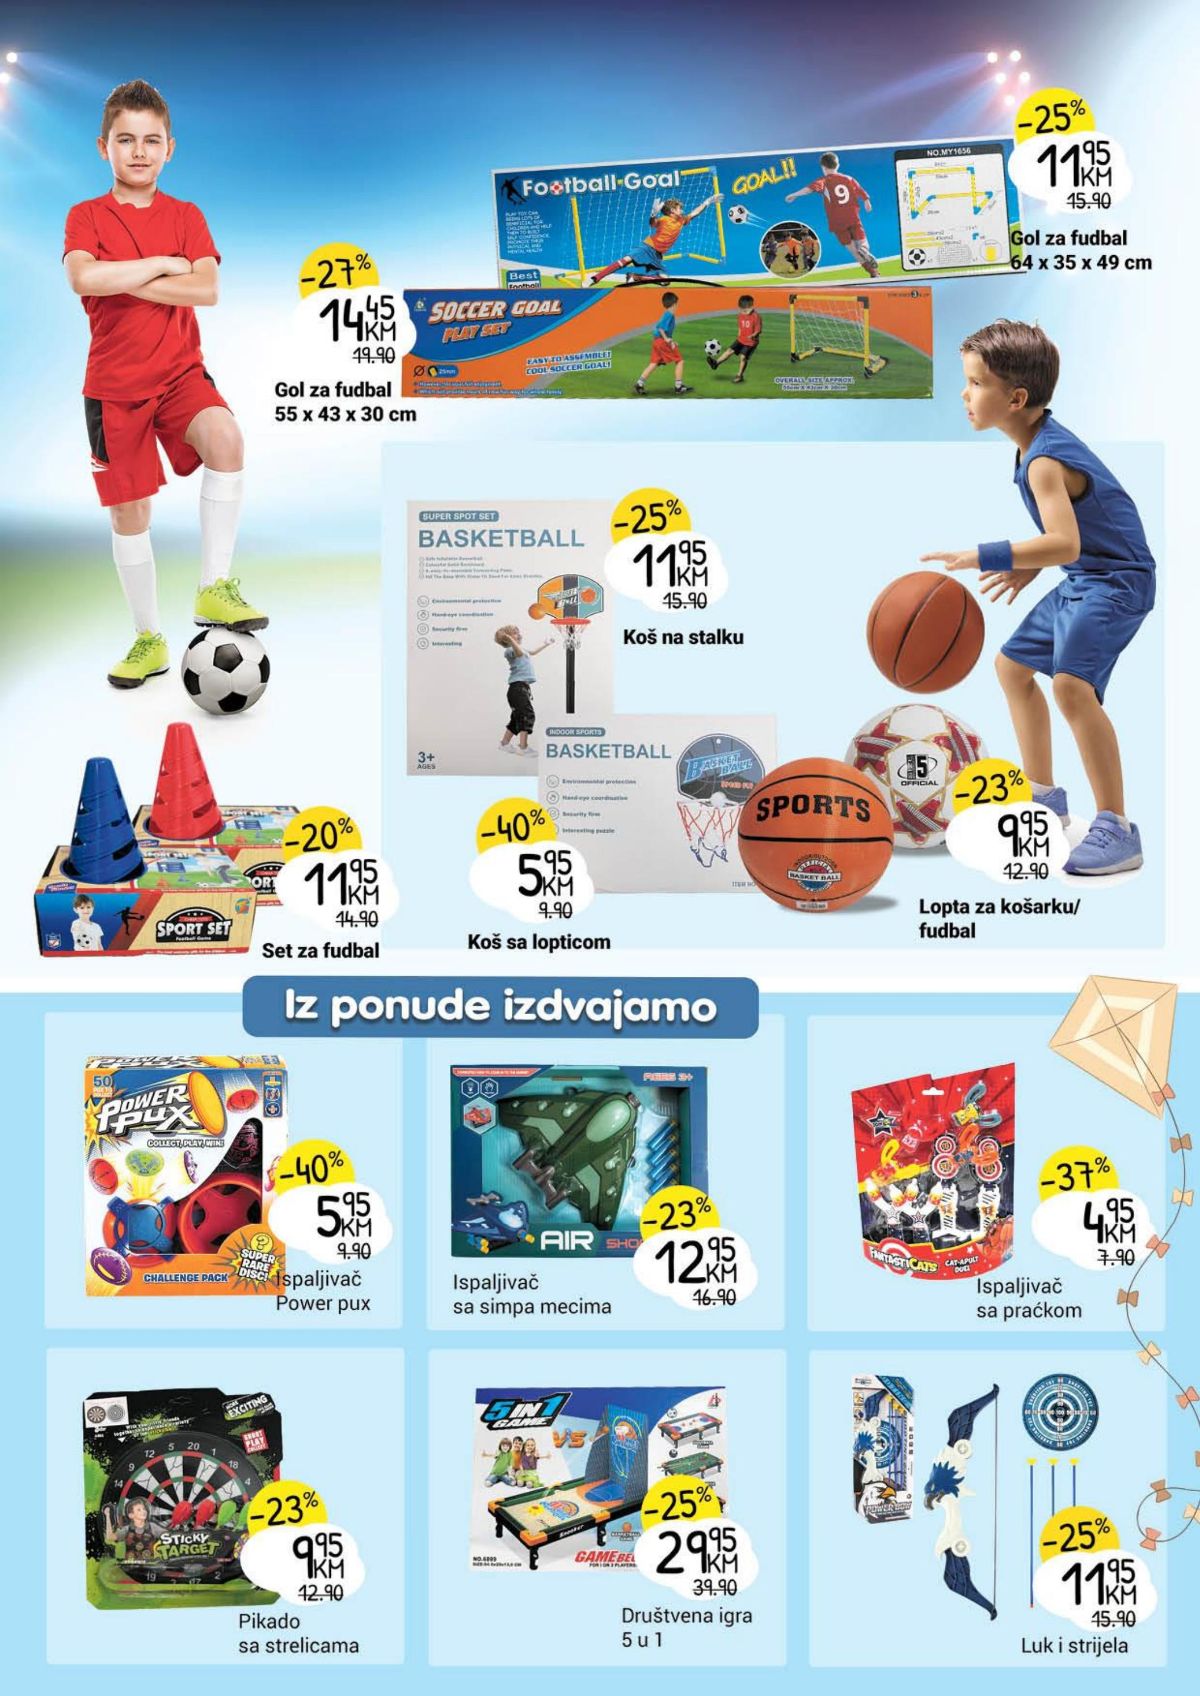 Bingo katalog sve za proljetnu zabavu i rekreaciju od 17.04. do 15.05. - stranica 8 igracke za djecu i koš sa laptopicaom